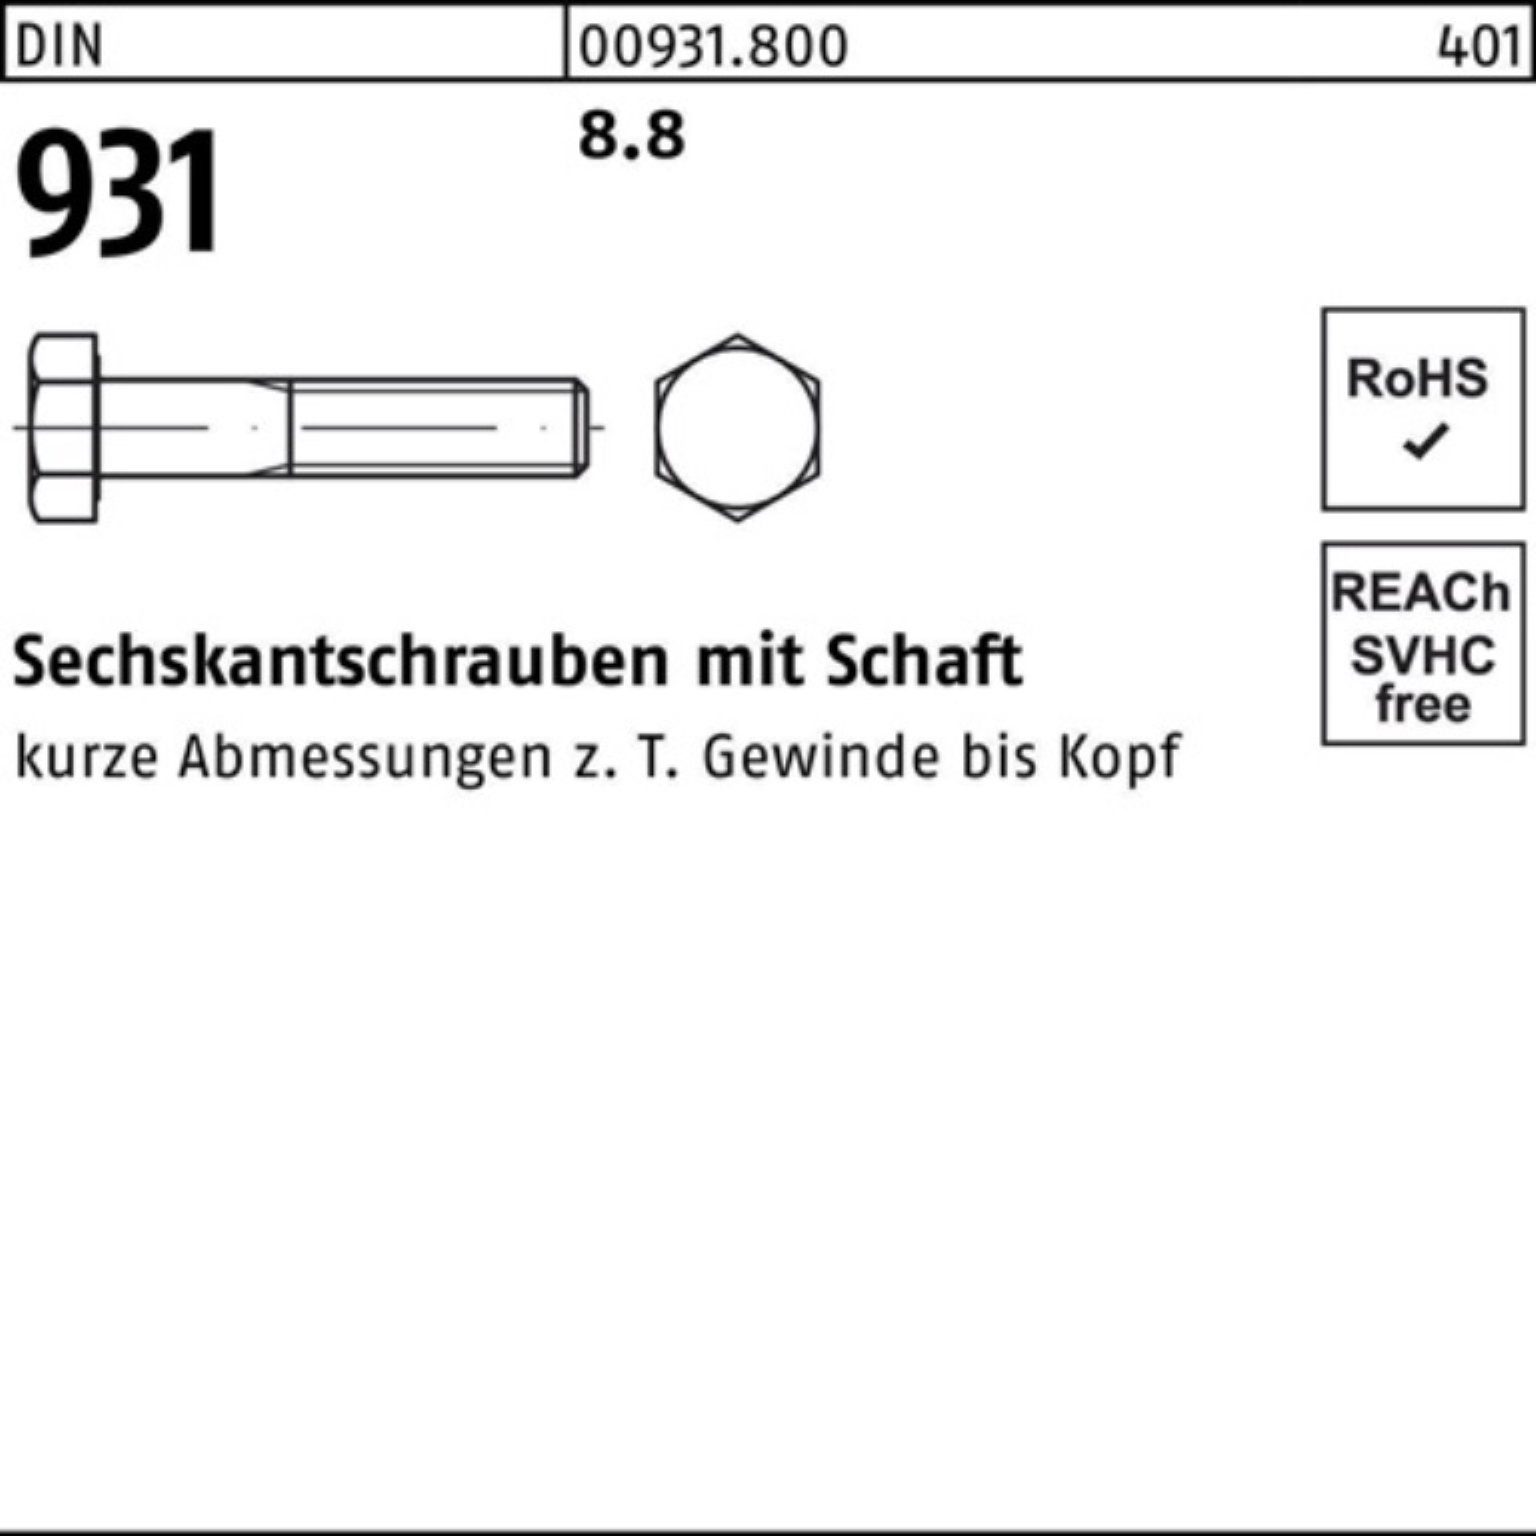 Pack Sechskantschraube M39x Stück Sechskantschraube Reyher Schaft 1 8.8 931 280 DIN 100er DIN